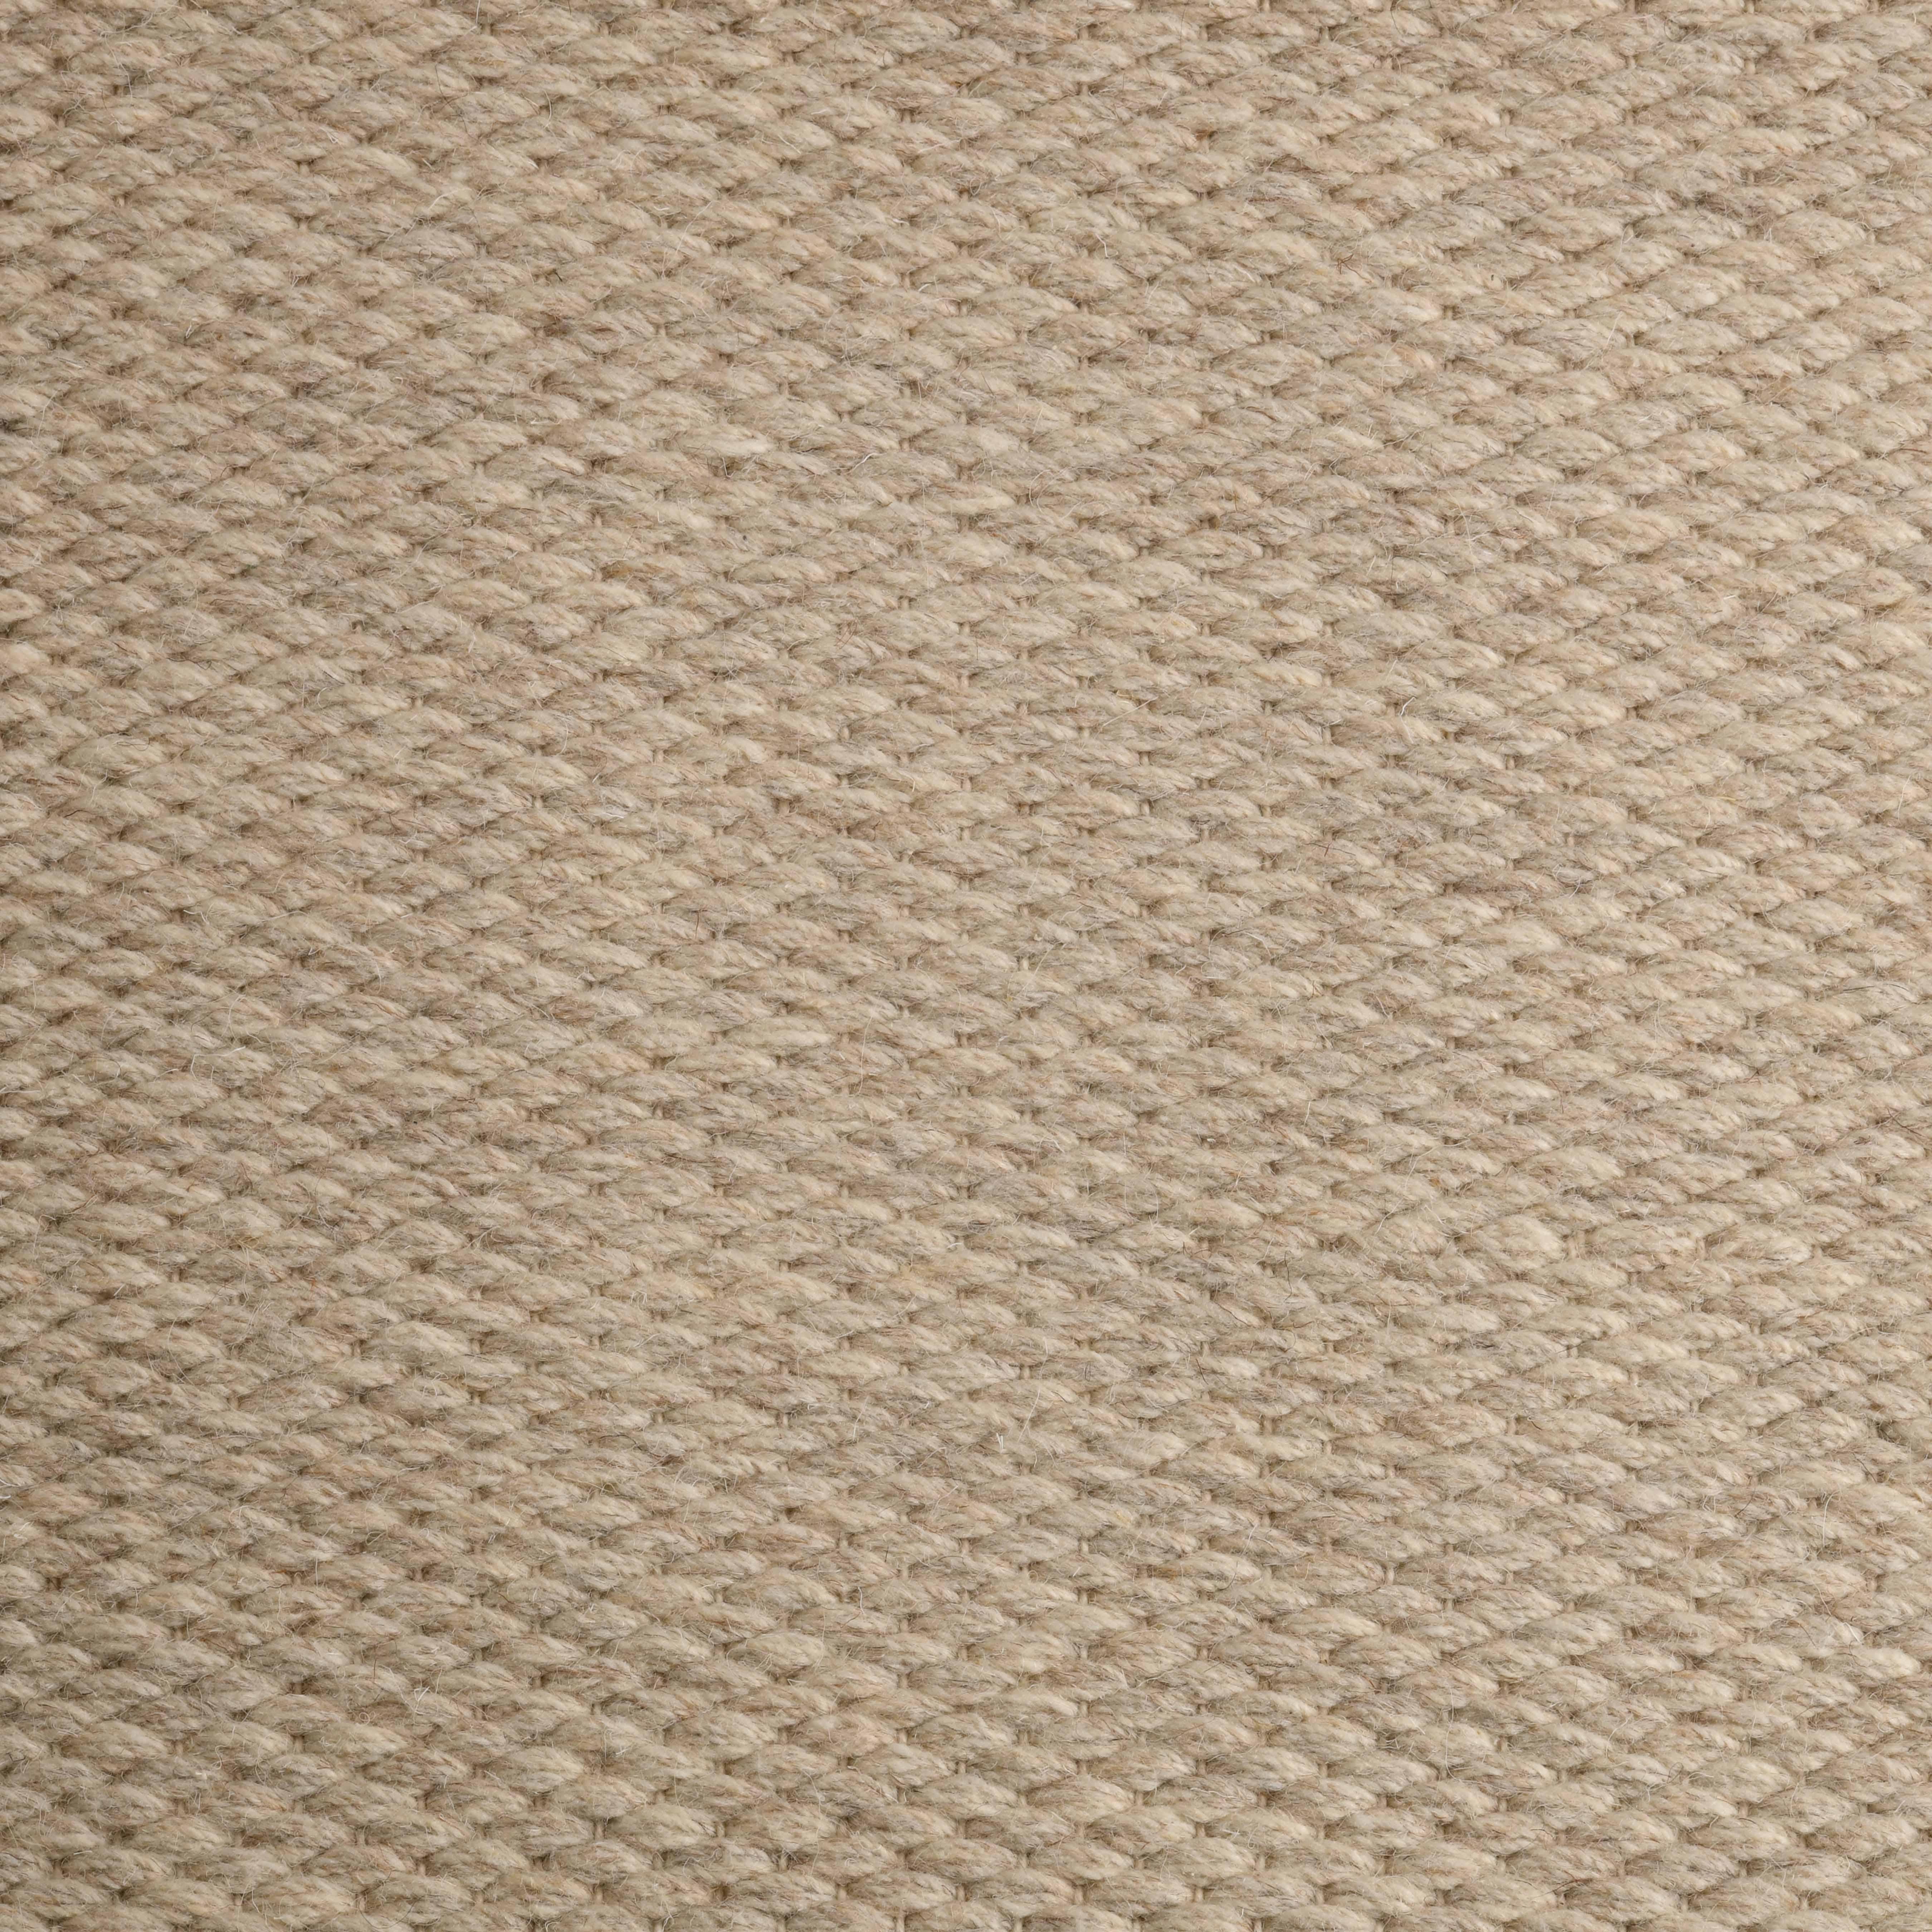 Quies, Beige, Handwoven, New Zealand and Mediterranean wools, 8' x 10'